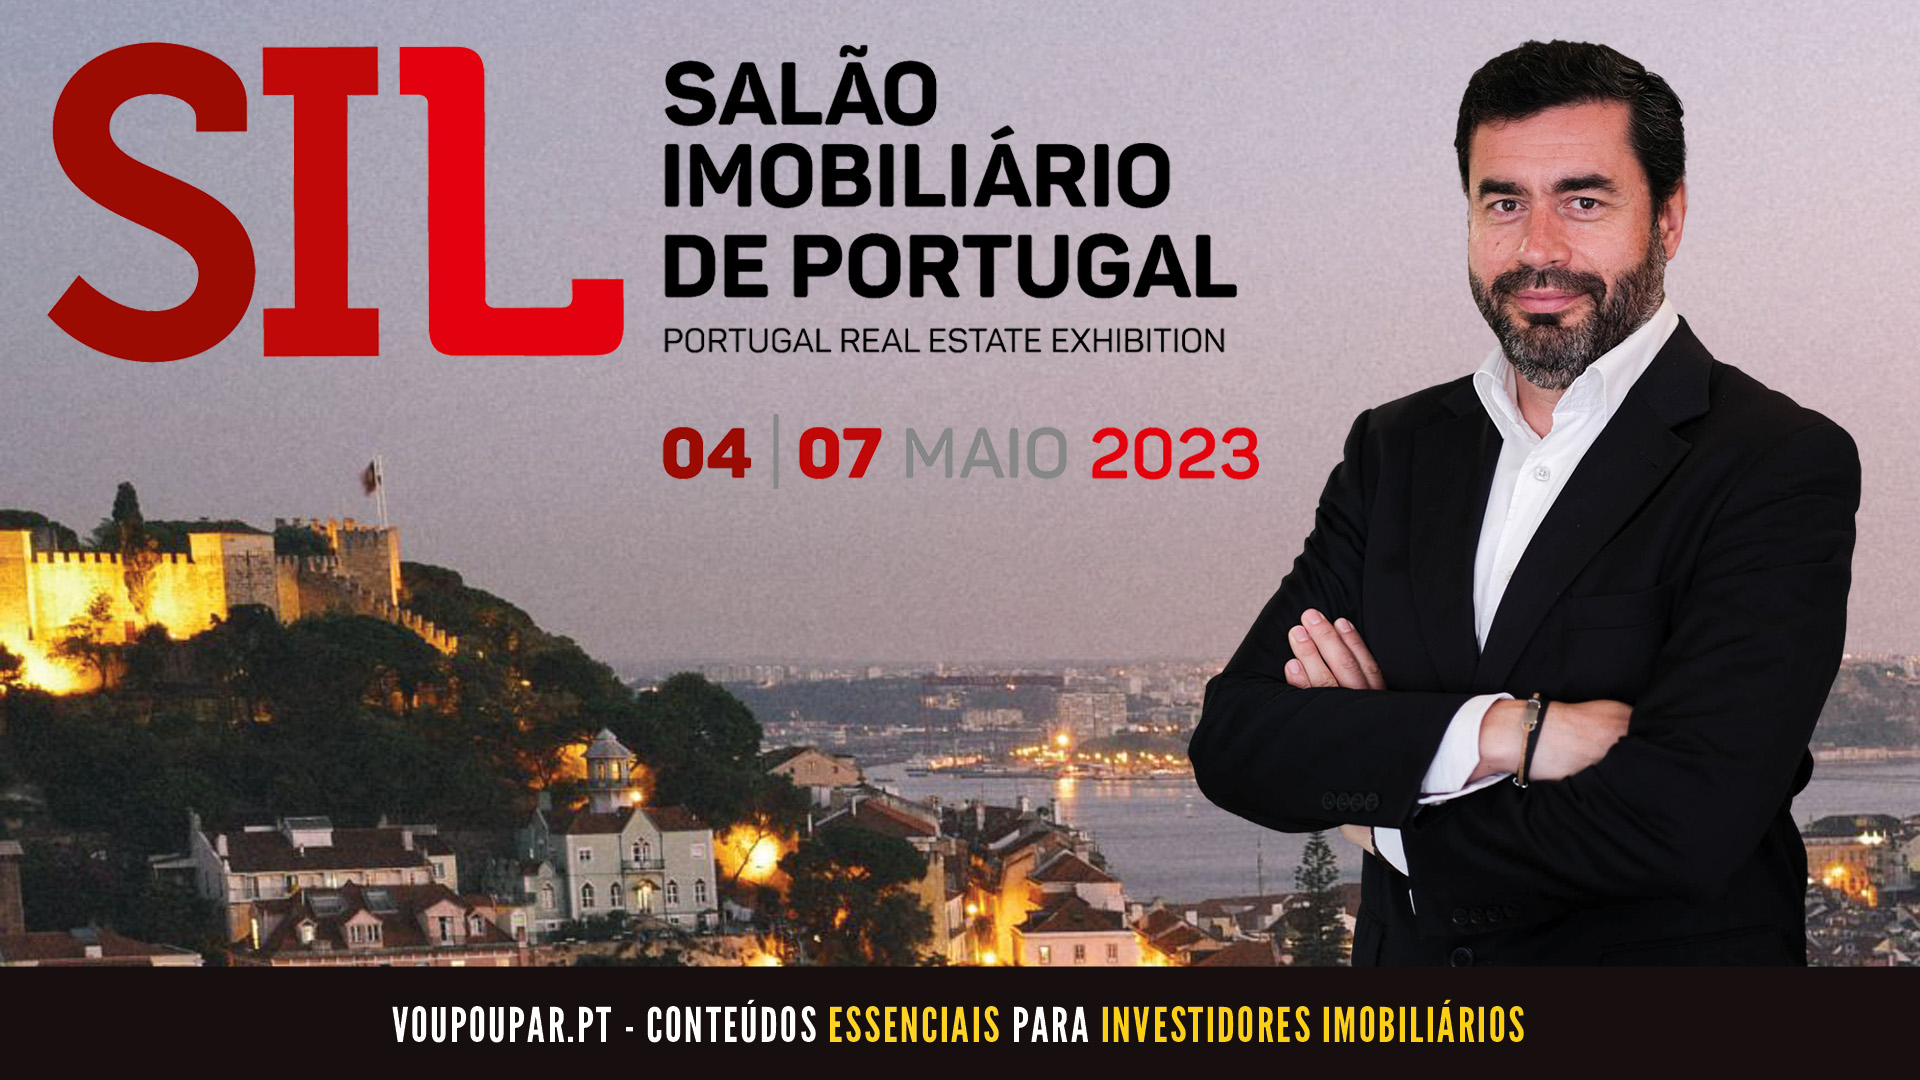 Visite-me no SIL – Salão Imobiliário de Portugal 2023!